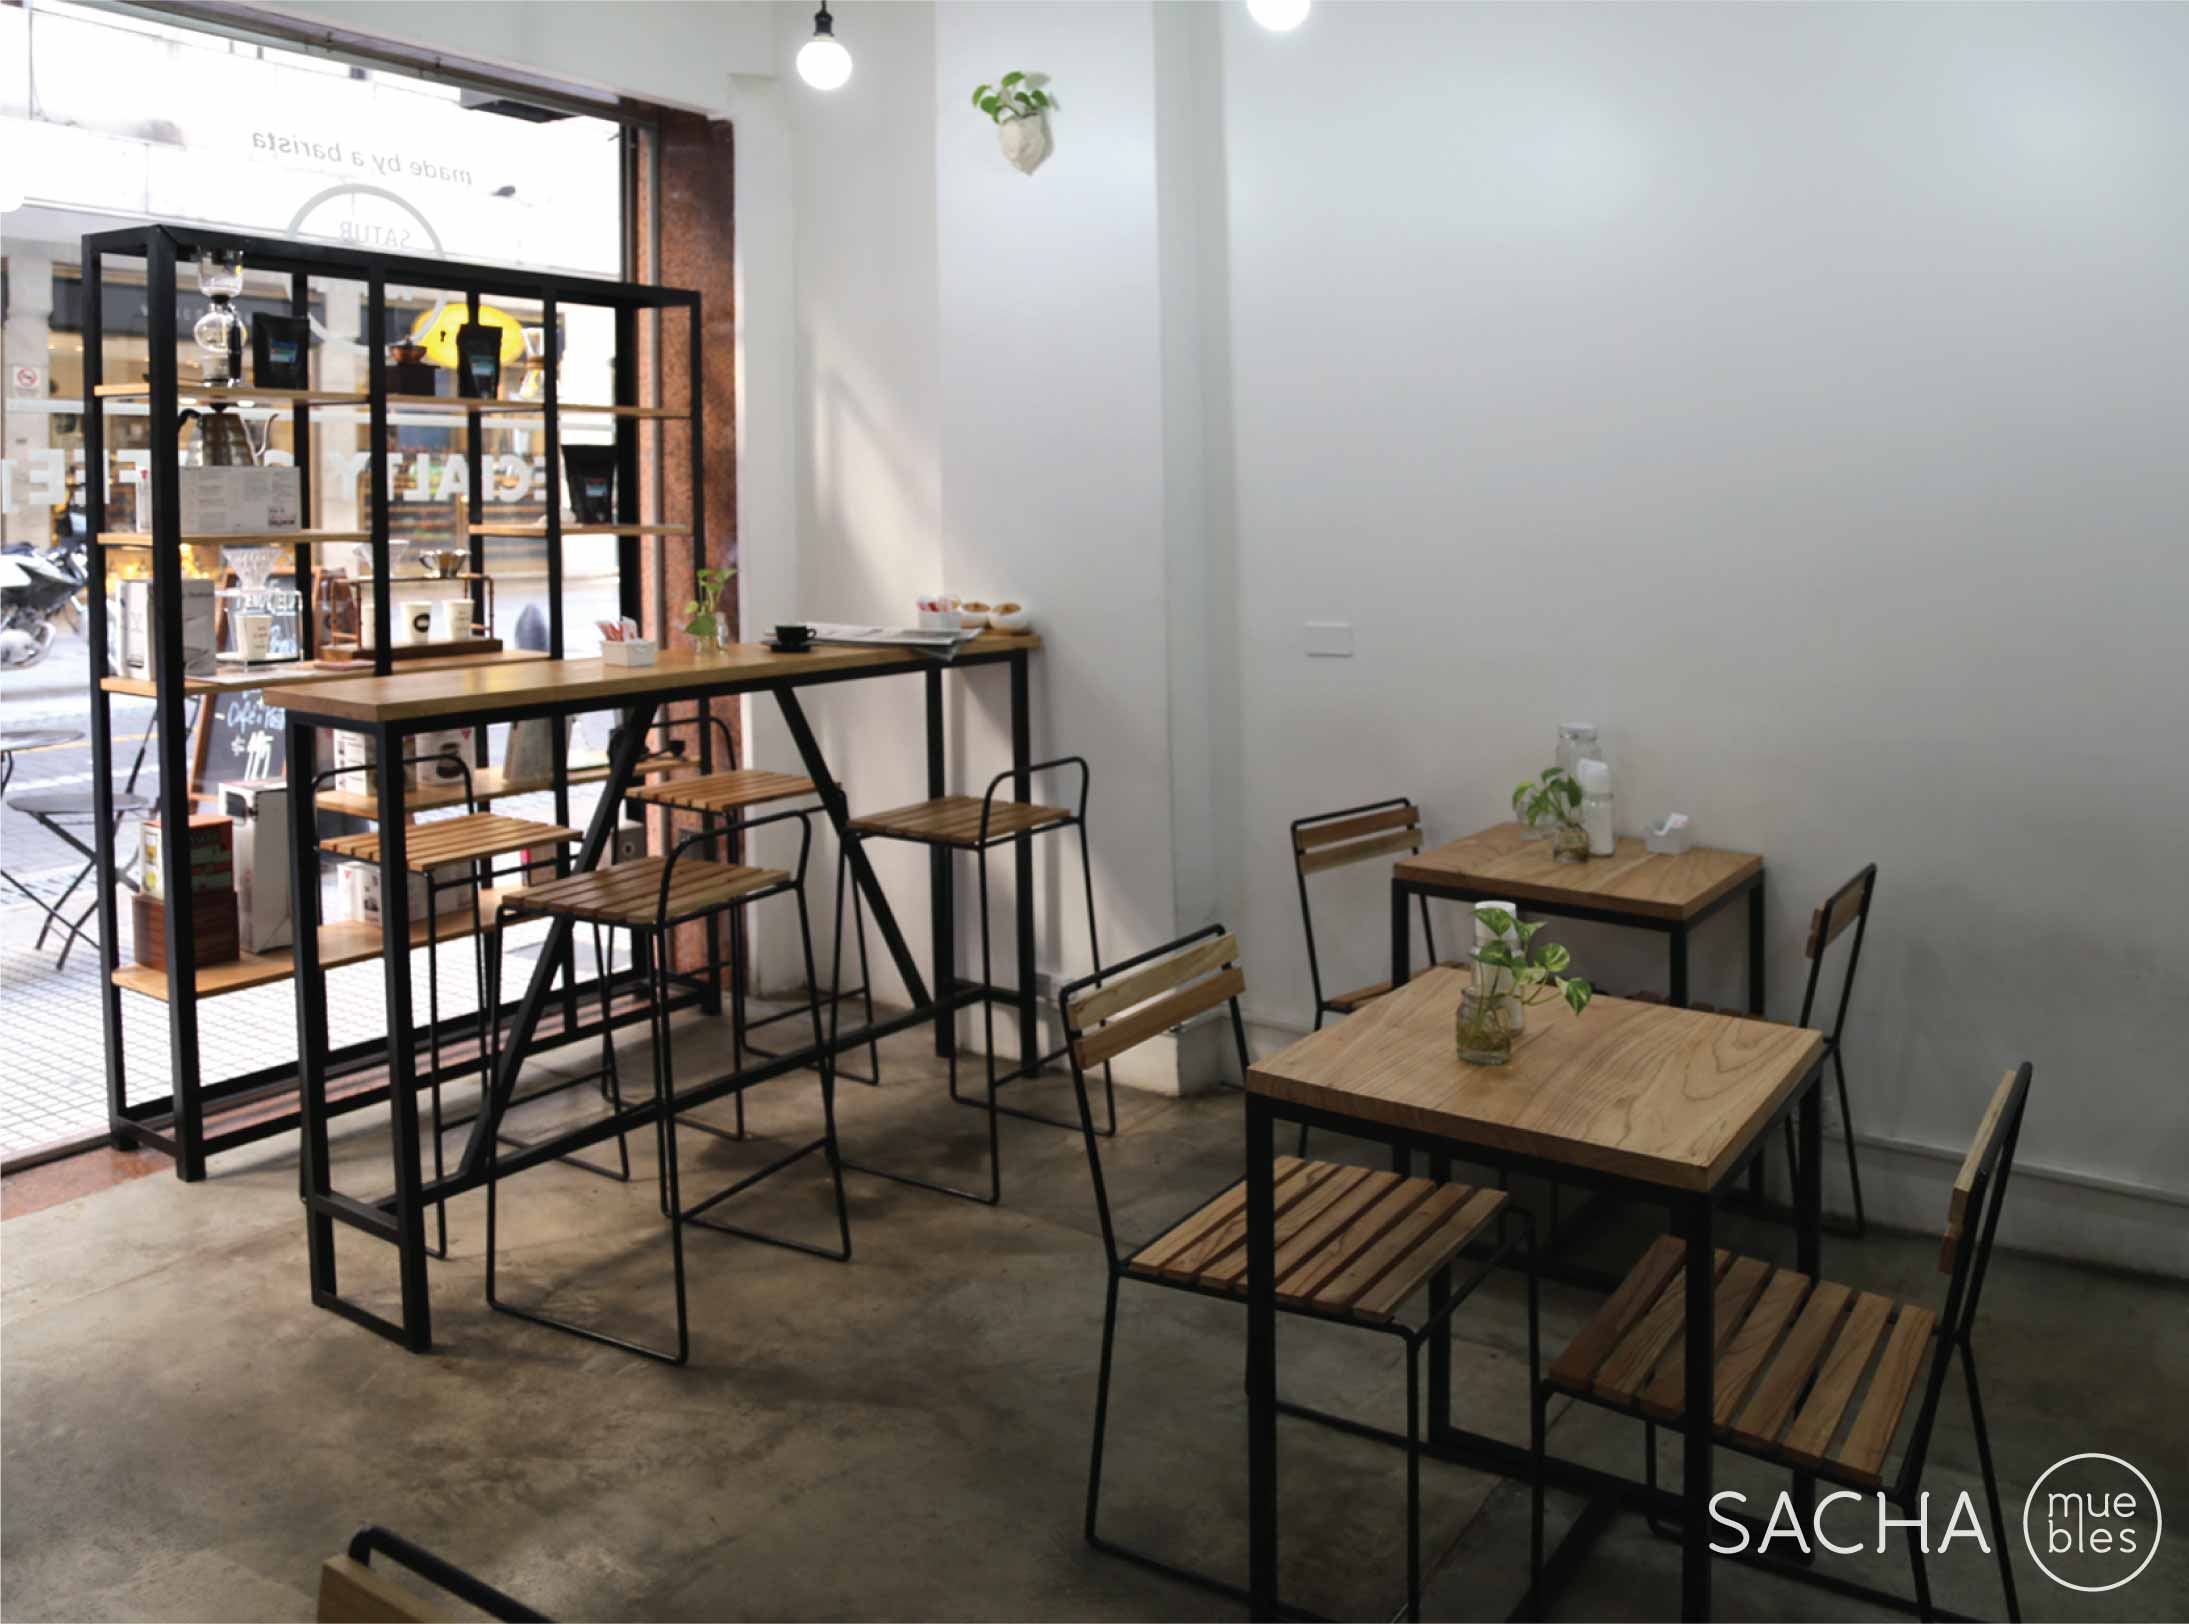 Idea, diseño y amoblamiento Proyecto Saturnina.
Saturnina Coffee. San Martín 989, CABA. https://www.facebook.com/Saturninacoffee